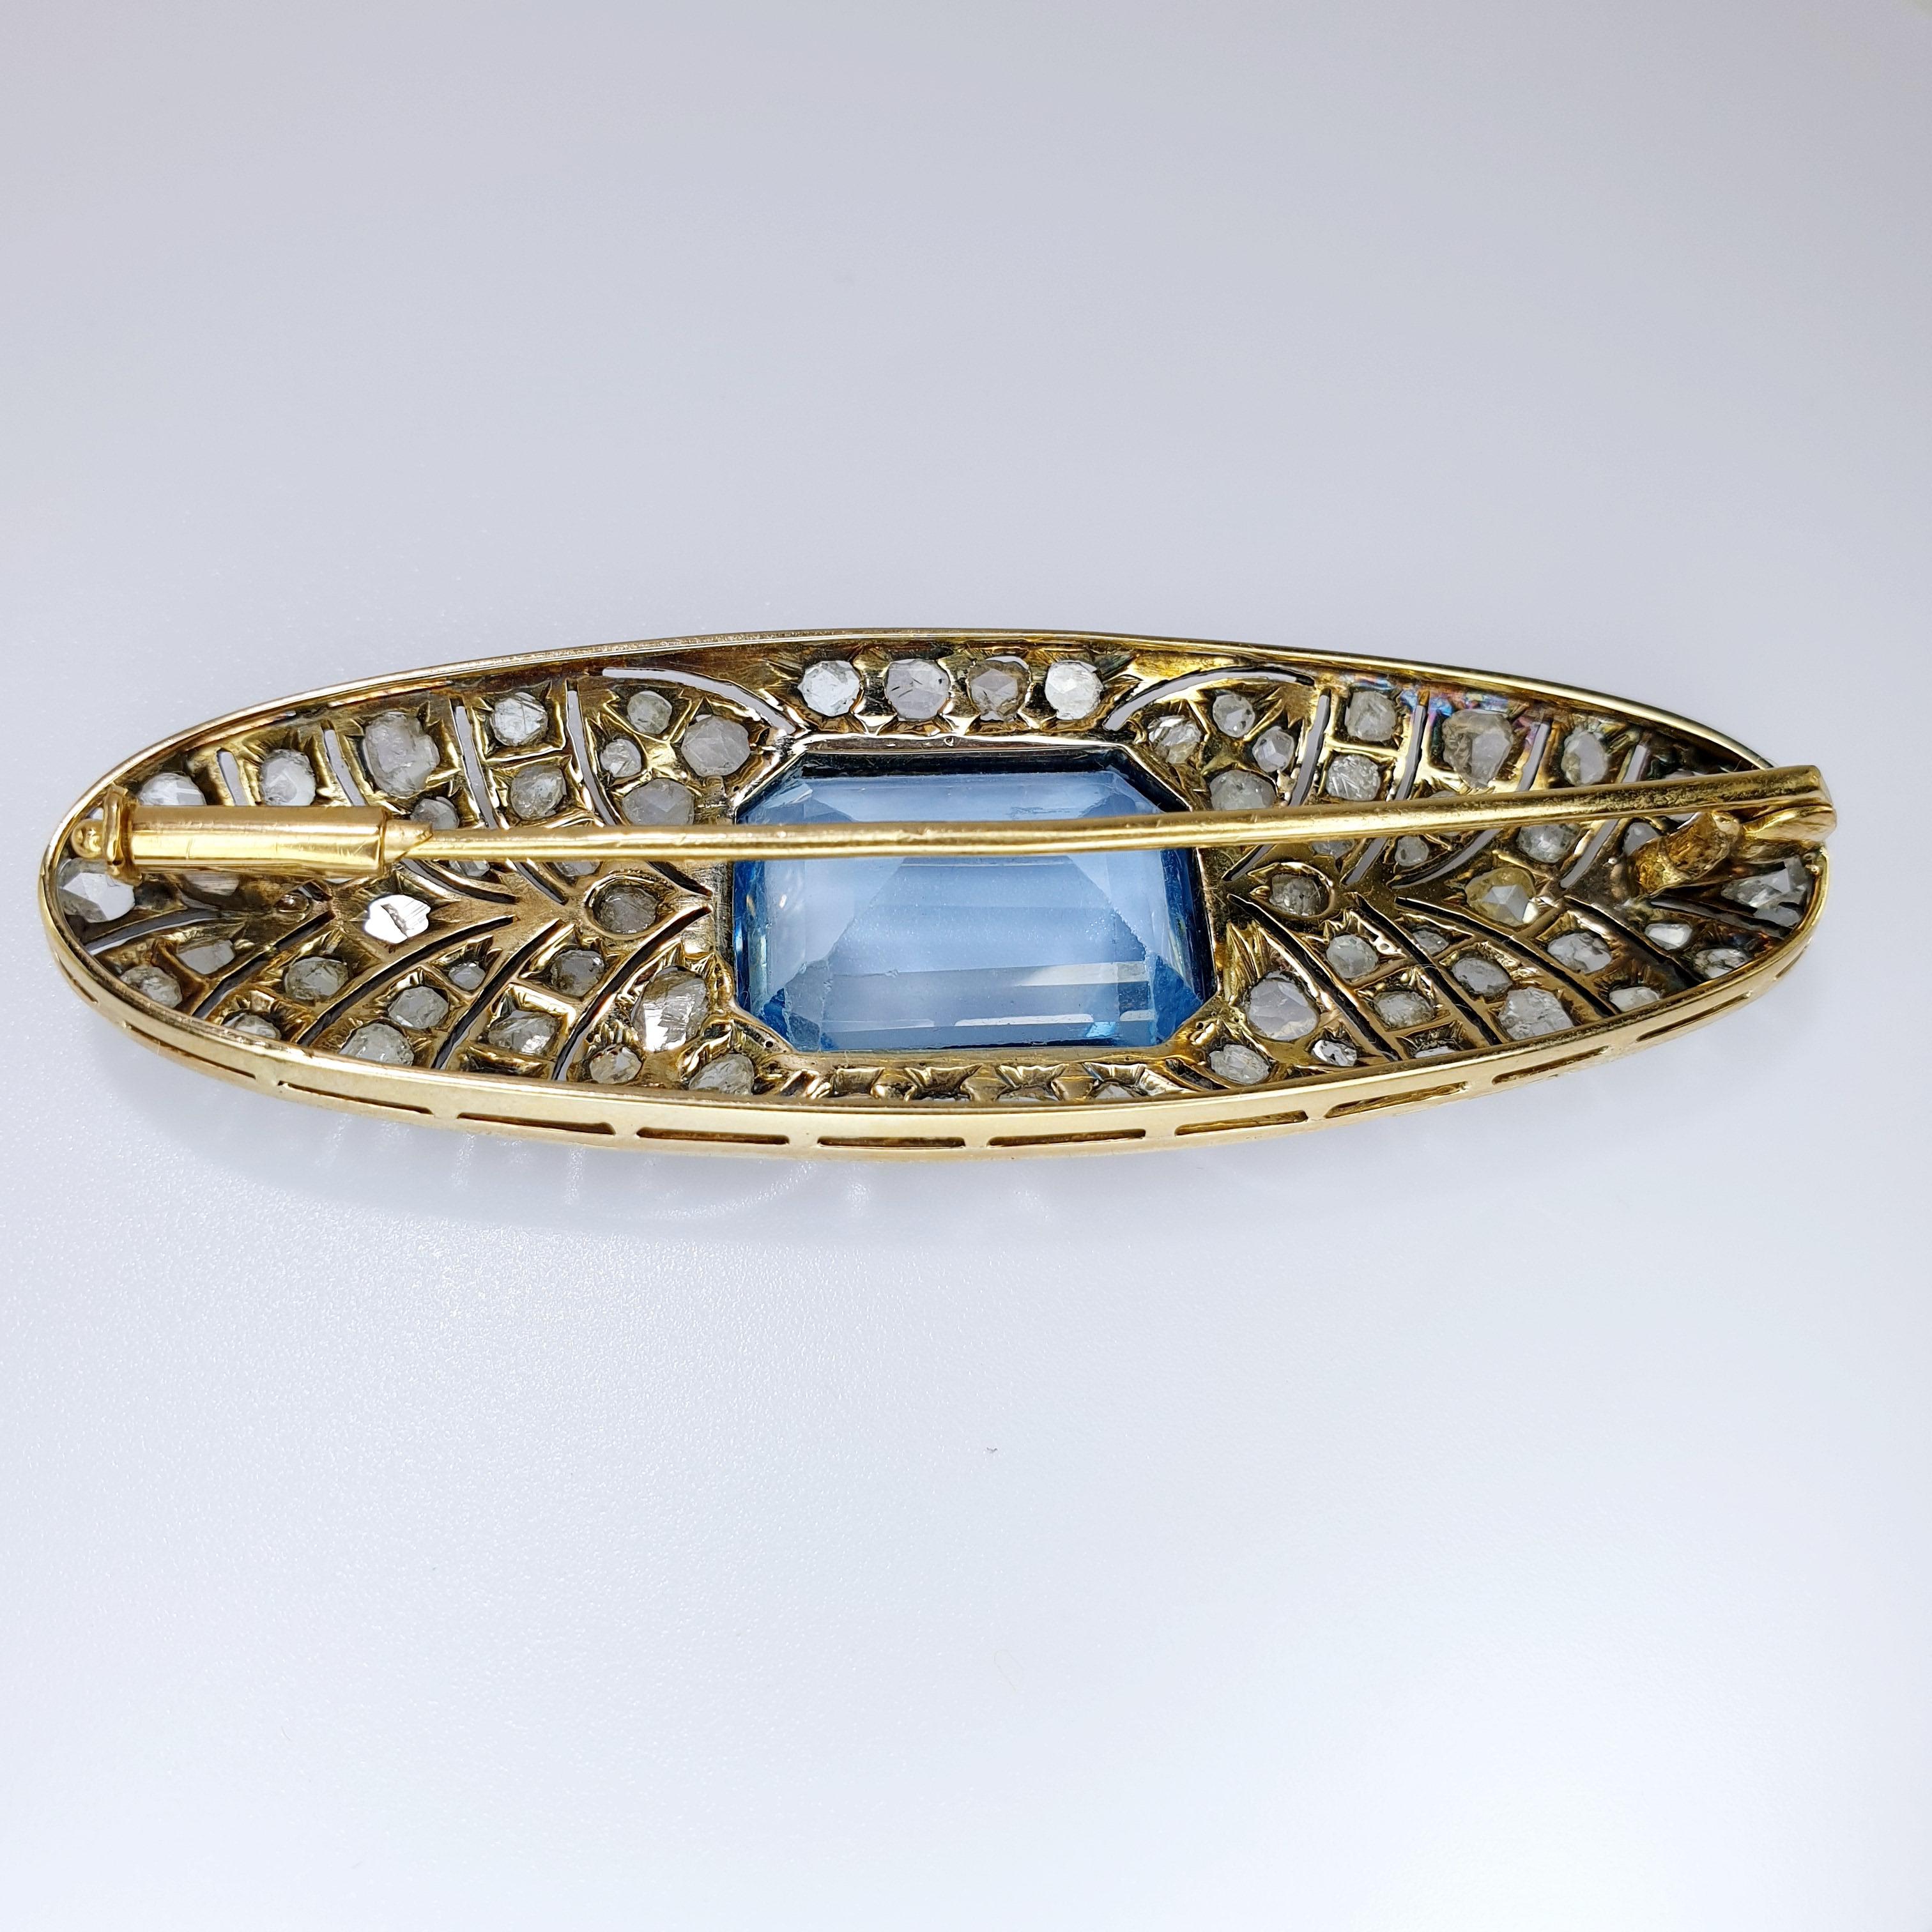 Cette magnifique broche Art déco de forme ovale est ornée d'une pierre centrale de couleur bleue taillée en émeraude.
Les diamants de taille ancienne reposent sur une bande de pointes sur une base en platine et un revers en or rose 18 carats. 

PRÊT